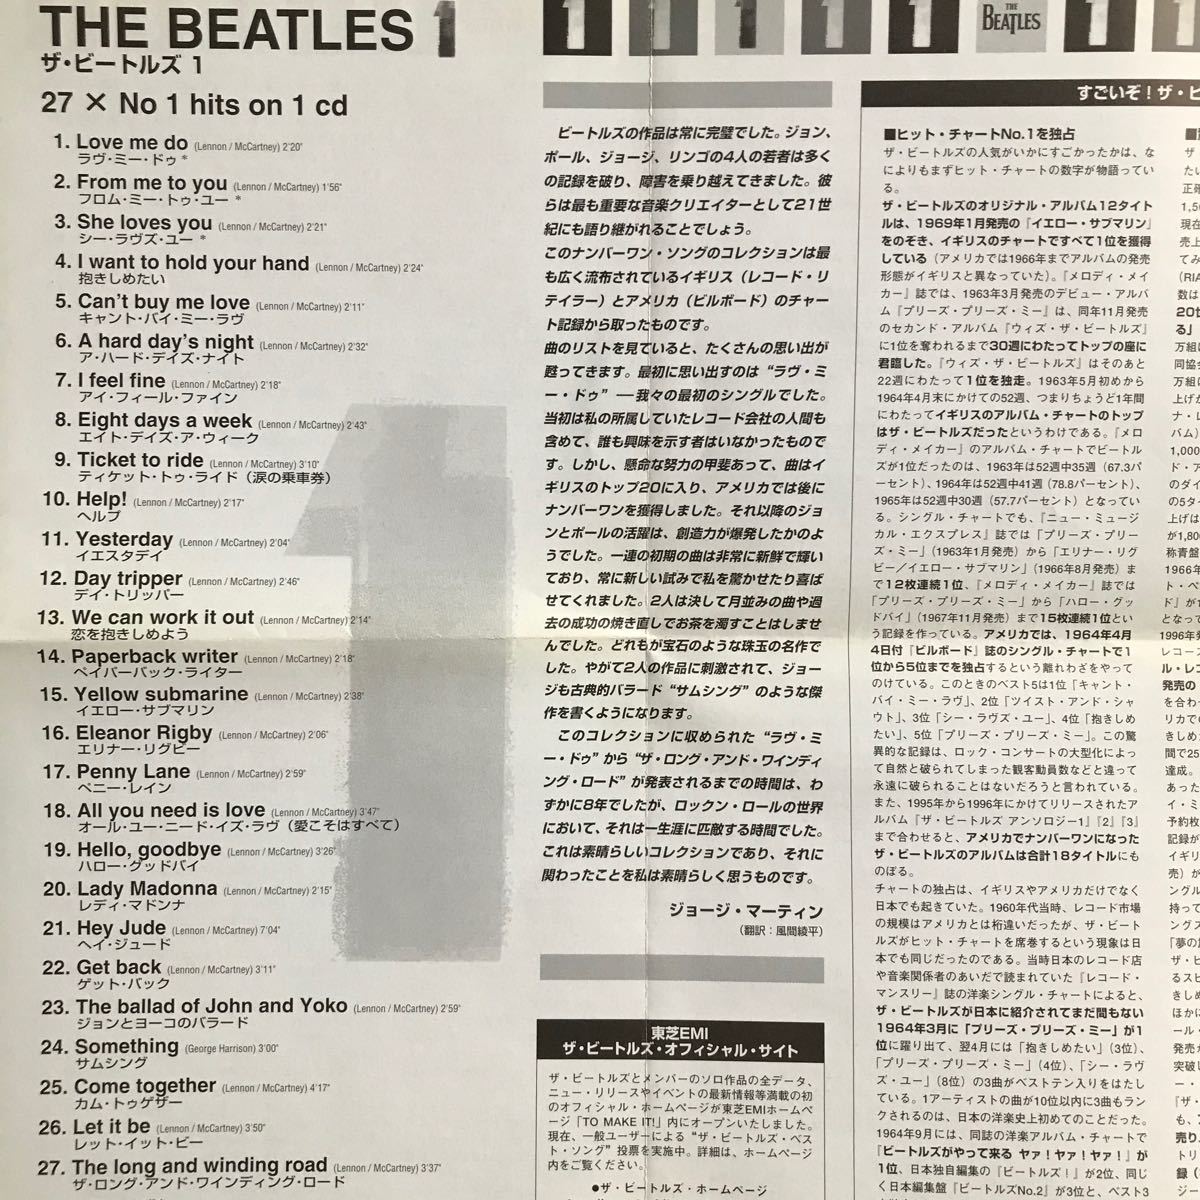 洋楽CD・ビートルズ「THE BEATLES 1」ベスト盤